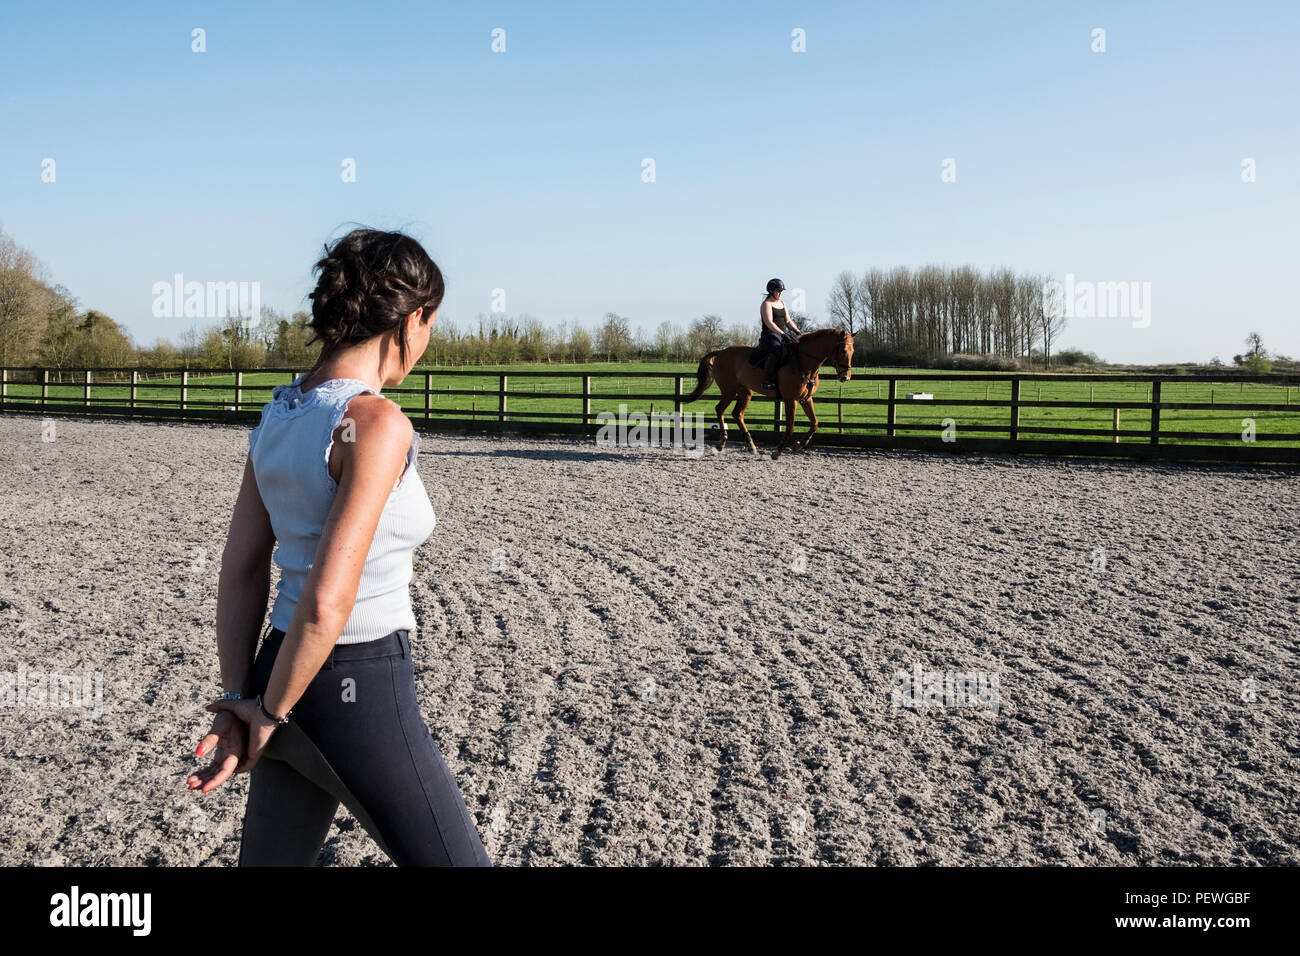 Frau trainer Beobachten ein Jugendmädchen Reiten auf einem Pferd baybrown im Paddock. Stockfoto